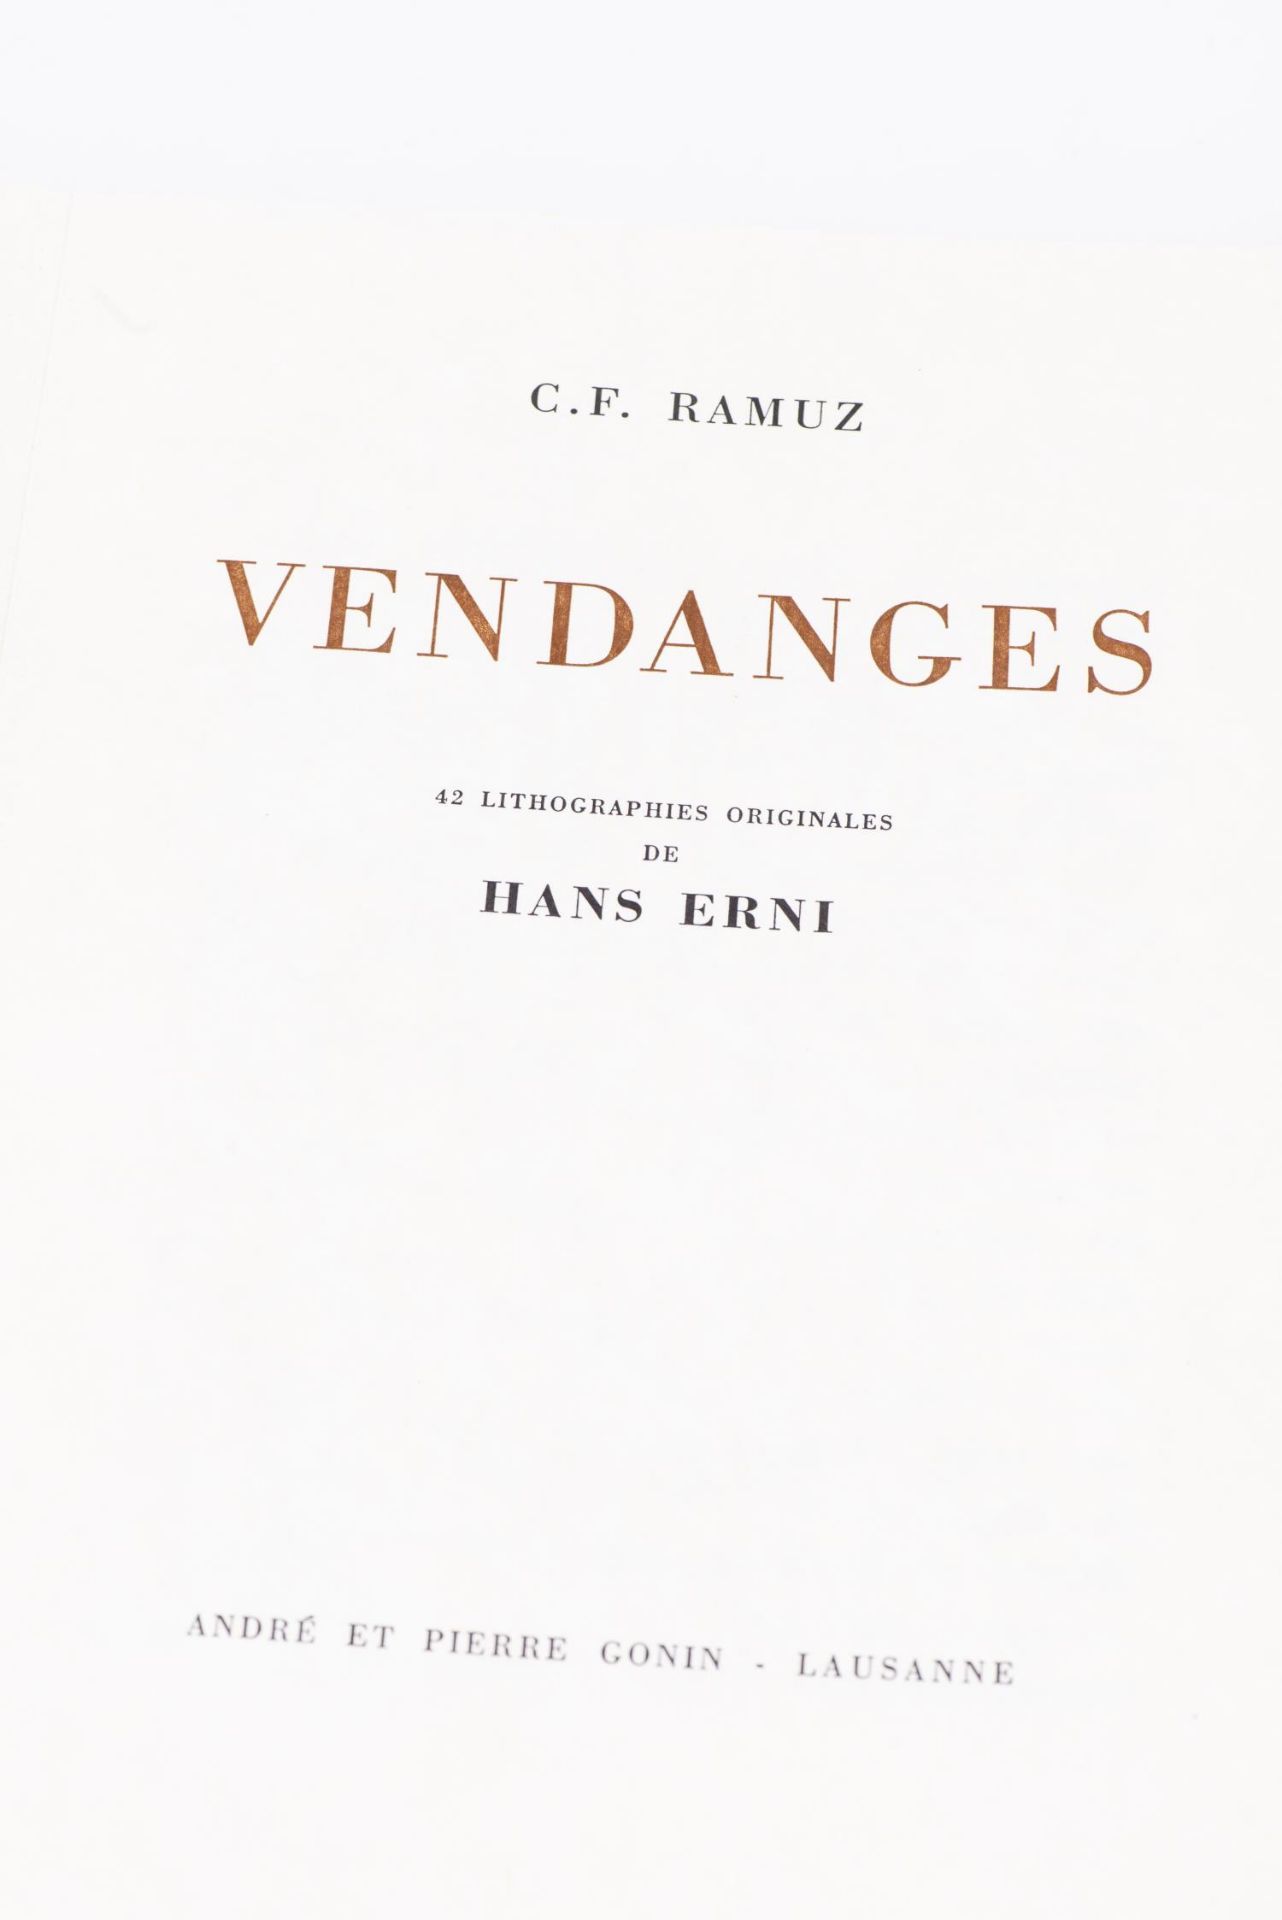 C.F Ramuz, "Vendanges" - Bild 3 aus 3